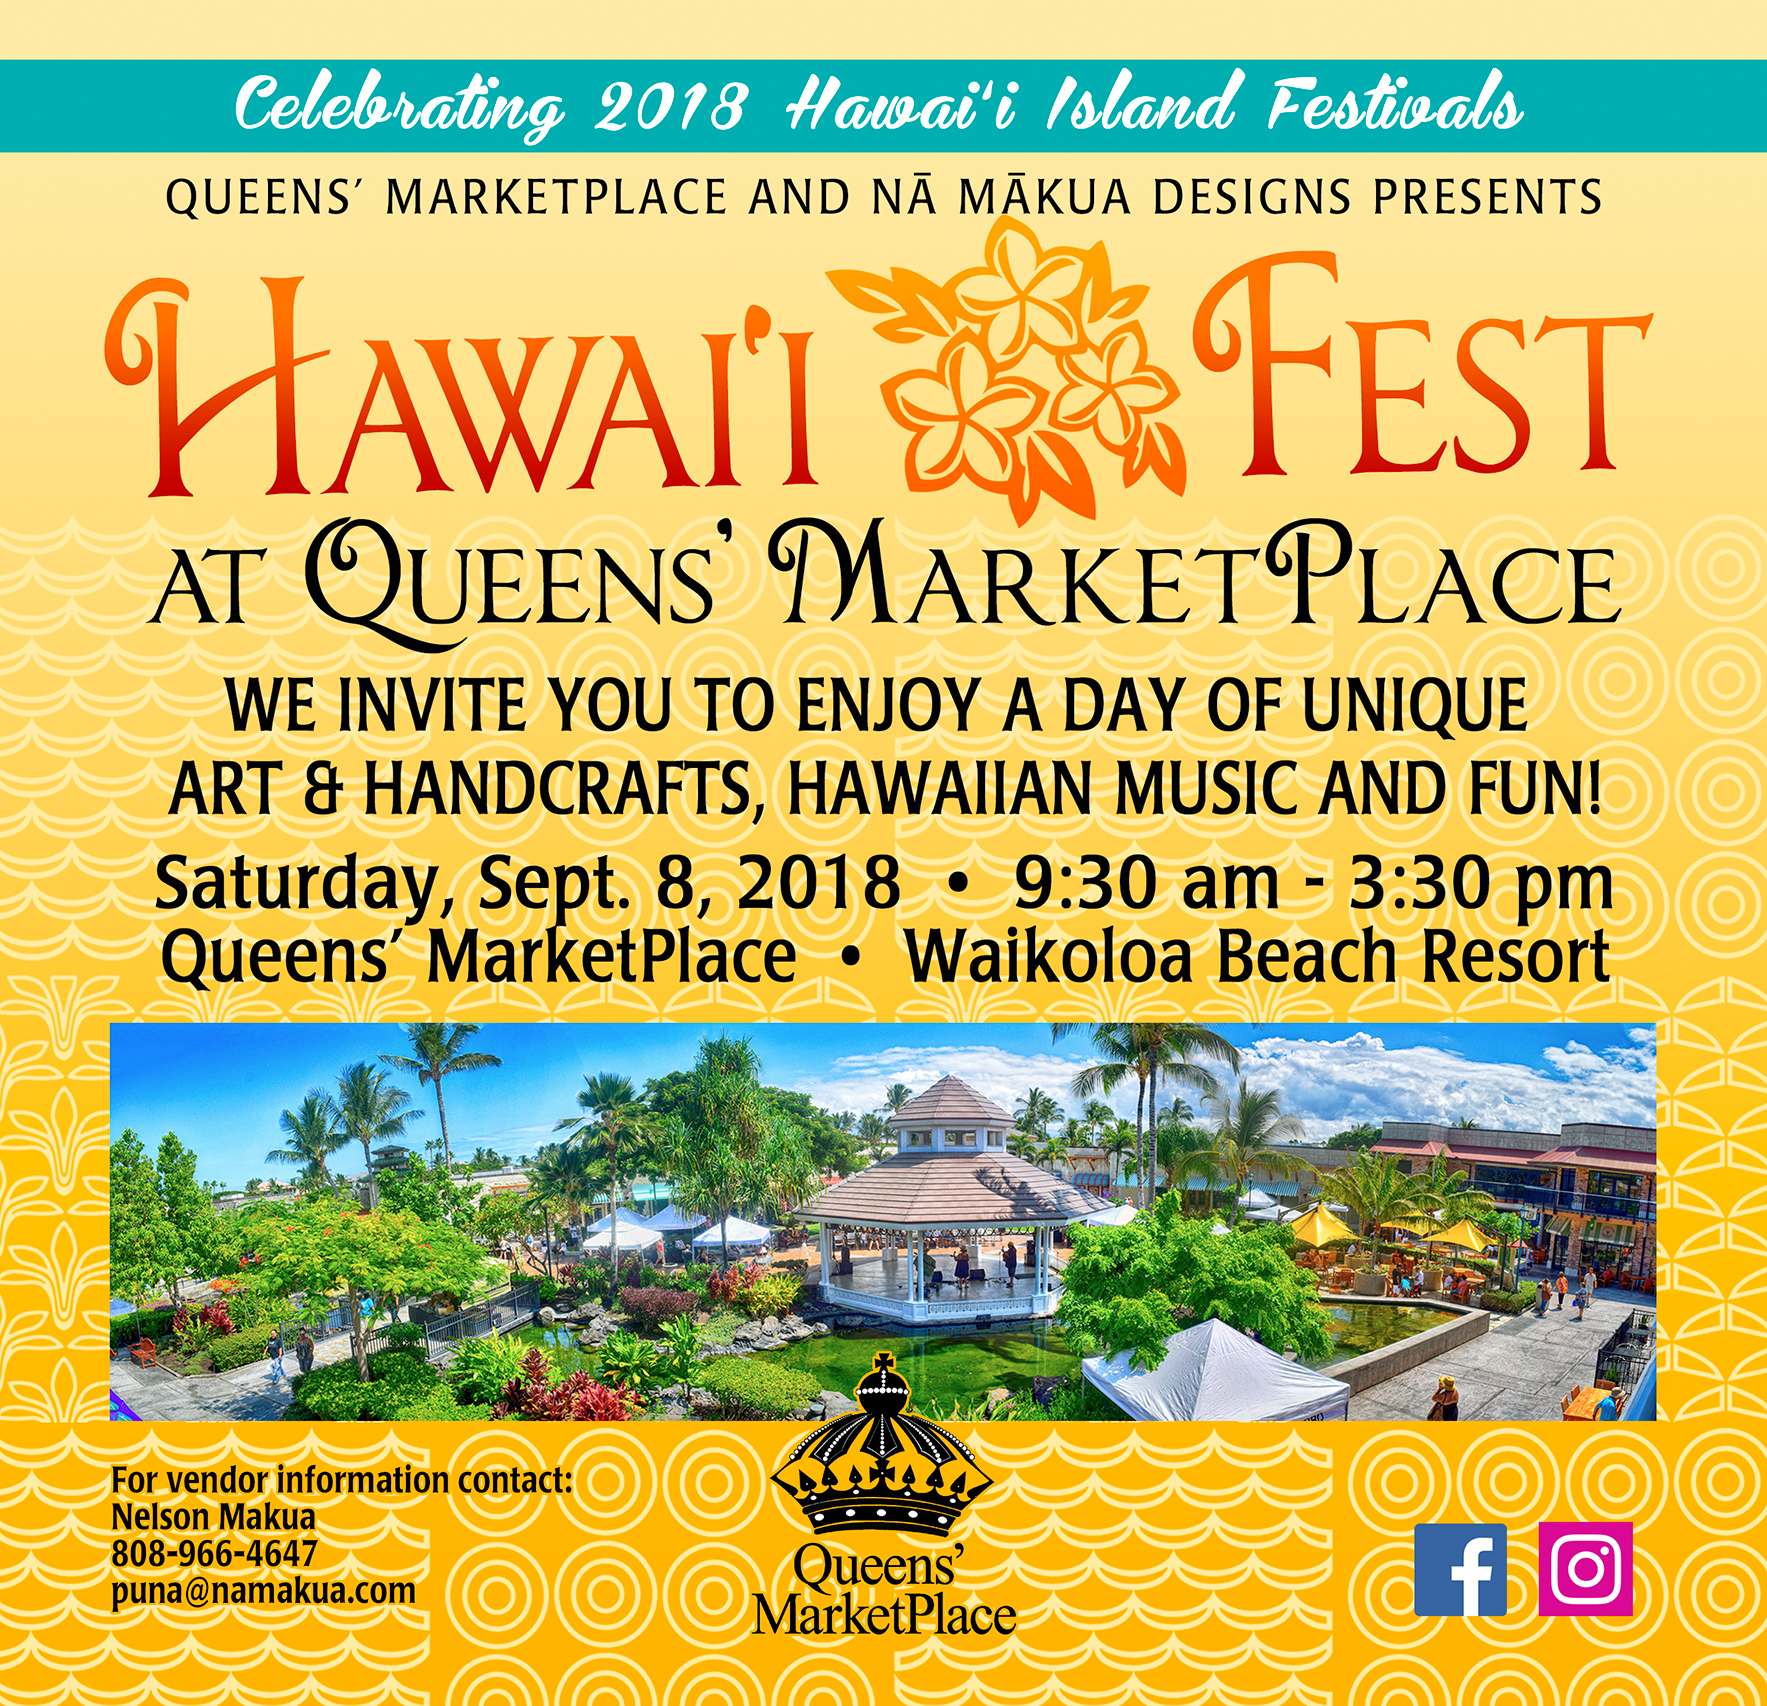 Hawai'i Fest at Queens' Marketplace